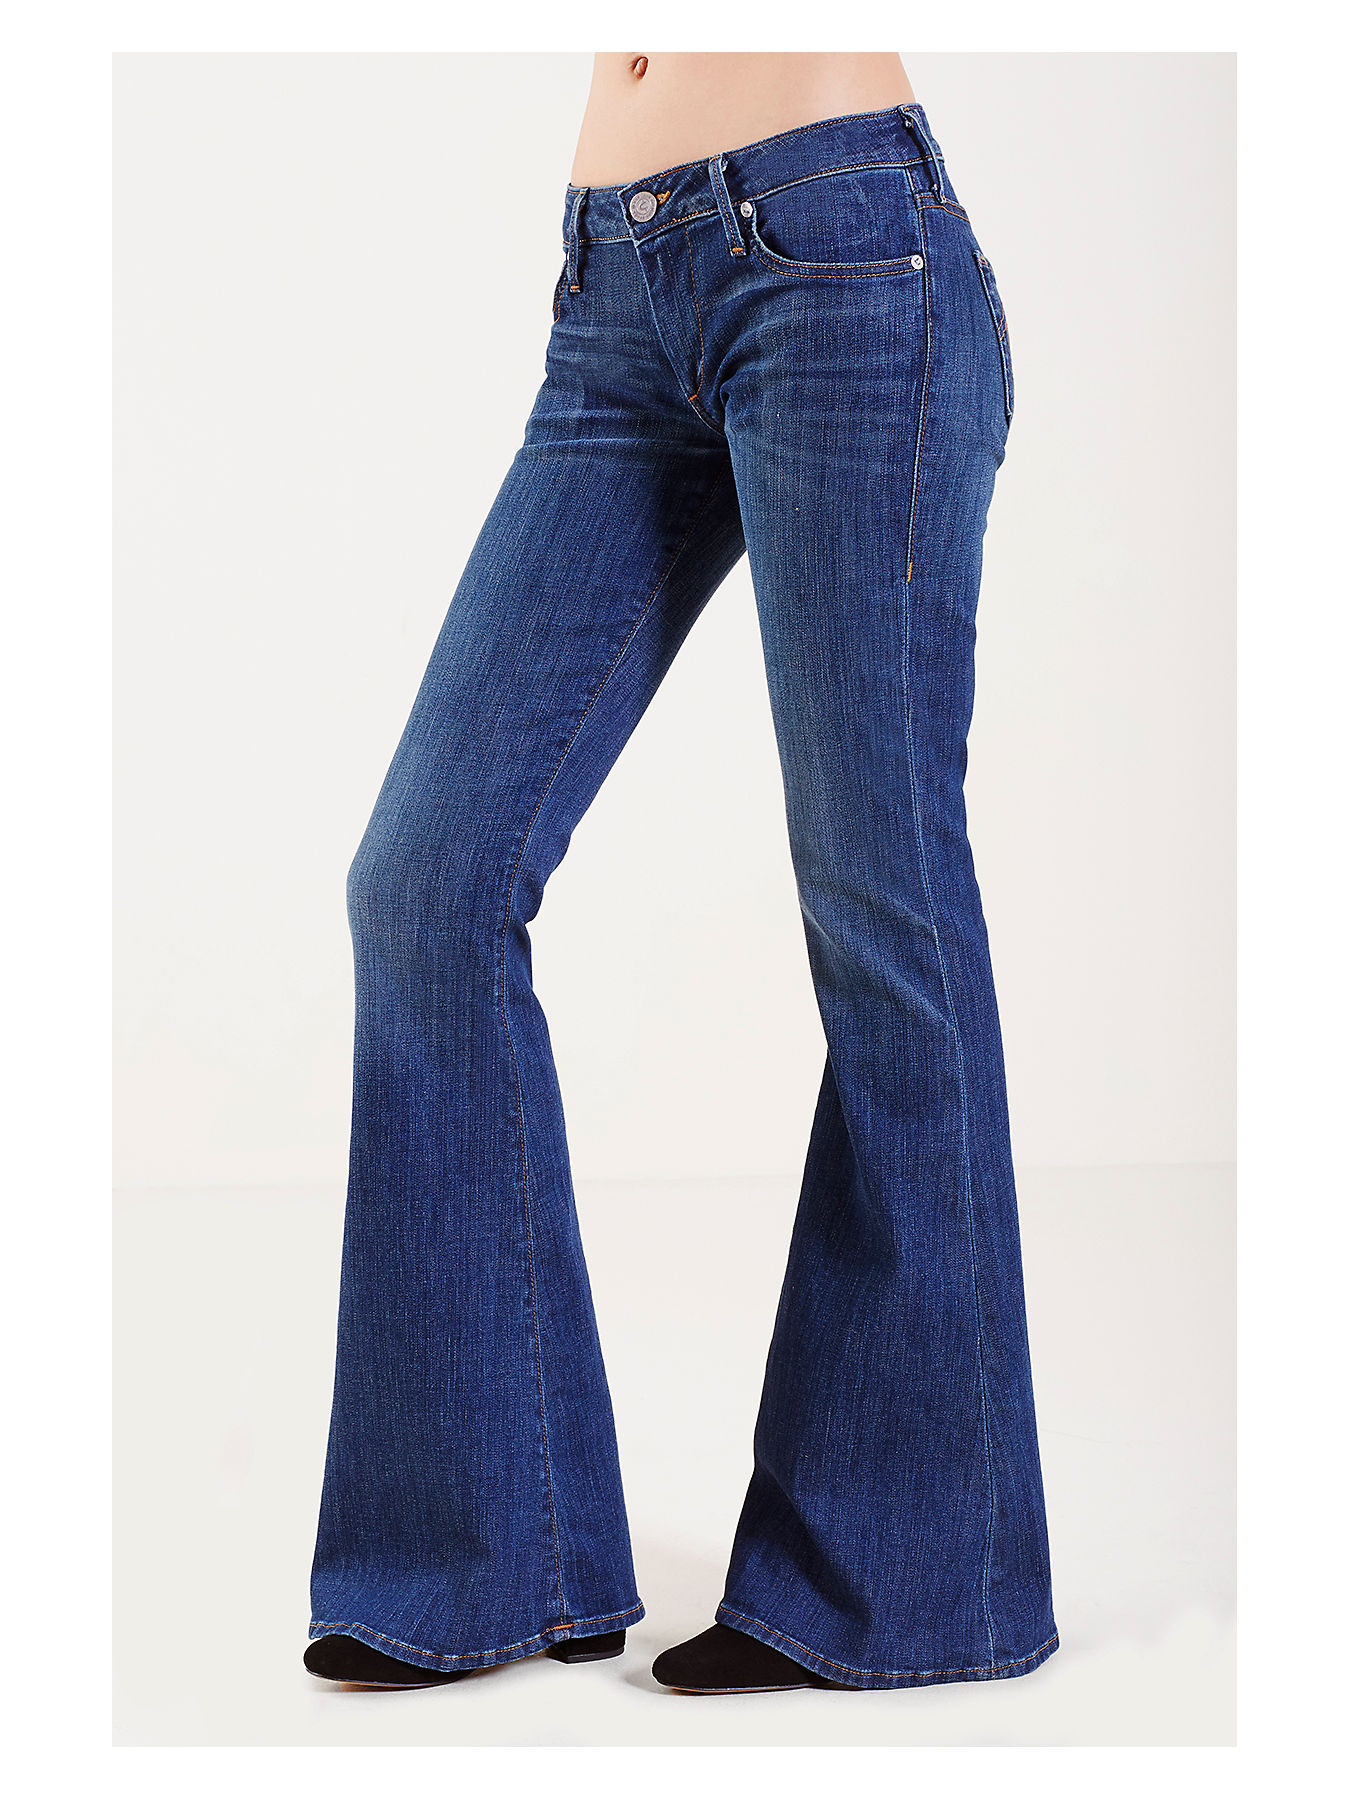 True Religion Low Rise jeans blauw Jeans-look Mode Spijkerbroeken Low Rise jeans 